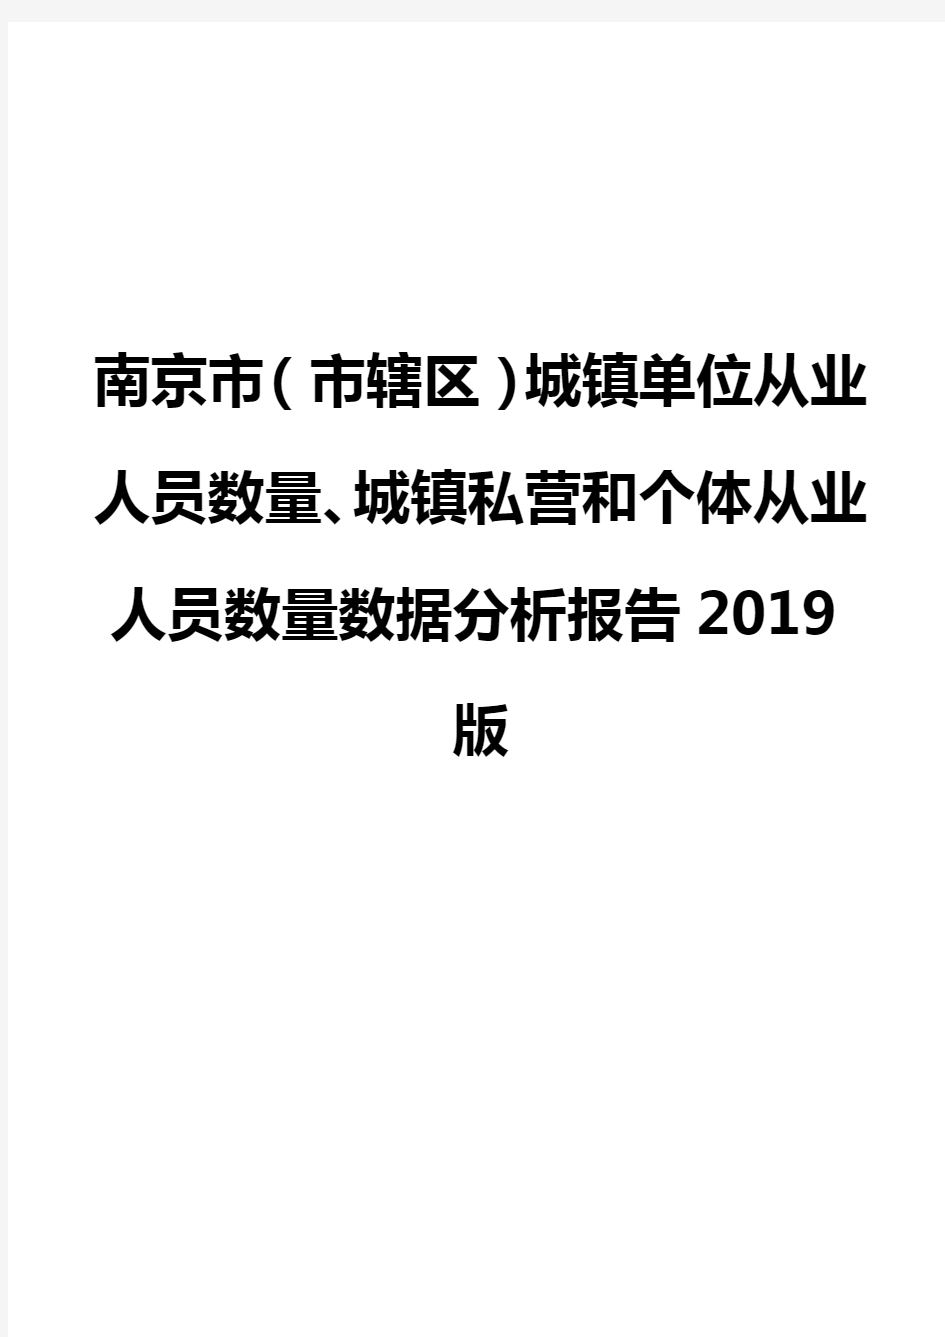 南京市(市辖区)城镇单位从业人员数量、城镇私营和个体从业人员数量数据分析报告2019版